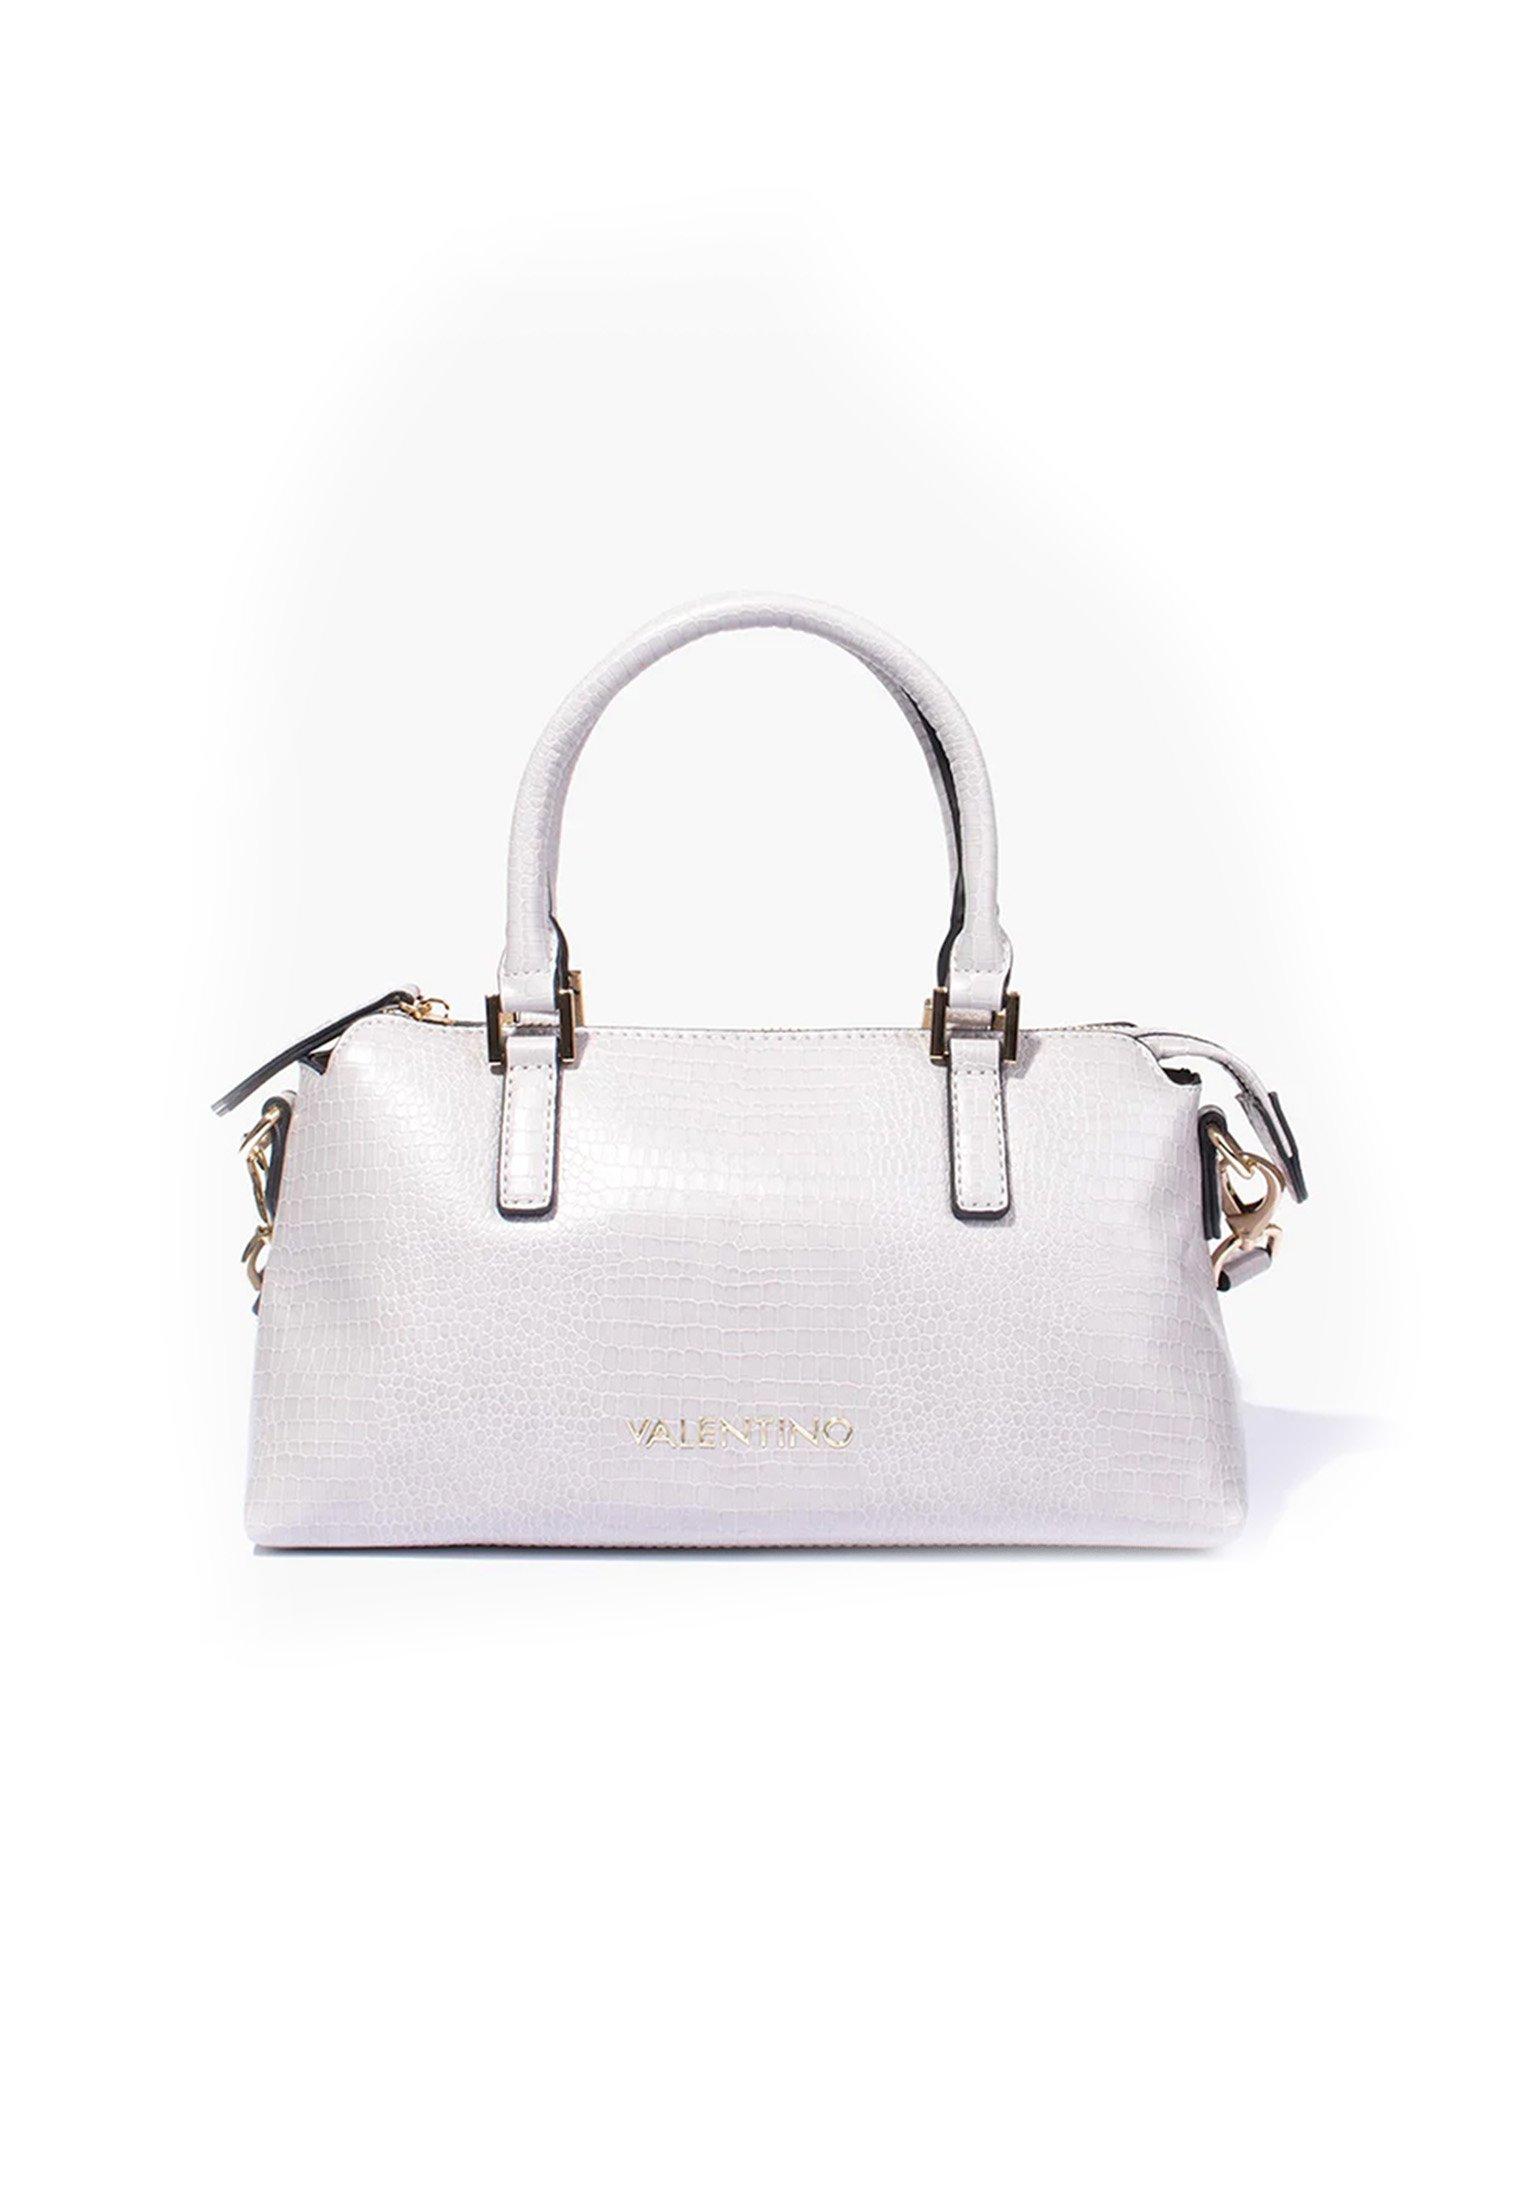 Valentino Handbags  Bagel  Handtasche 